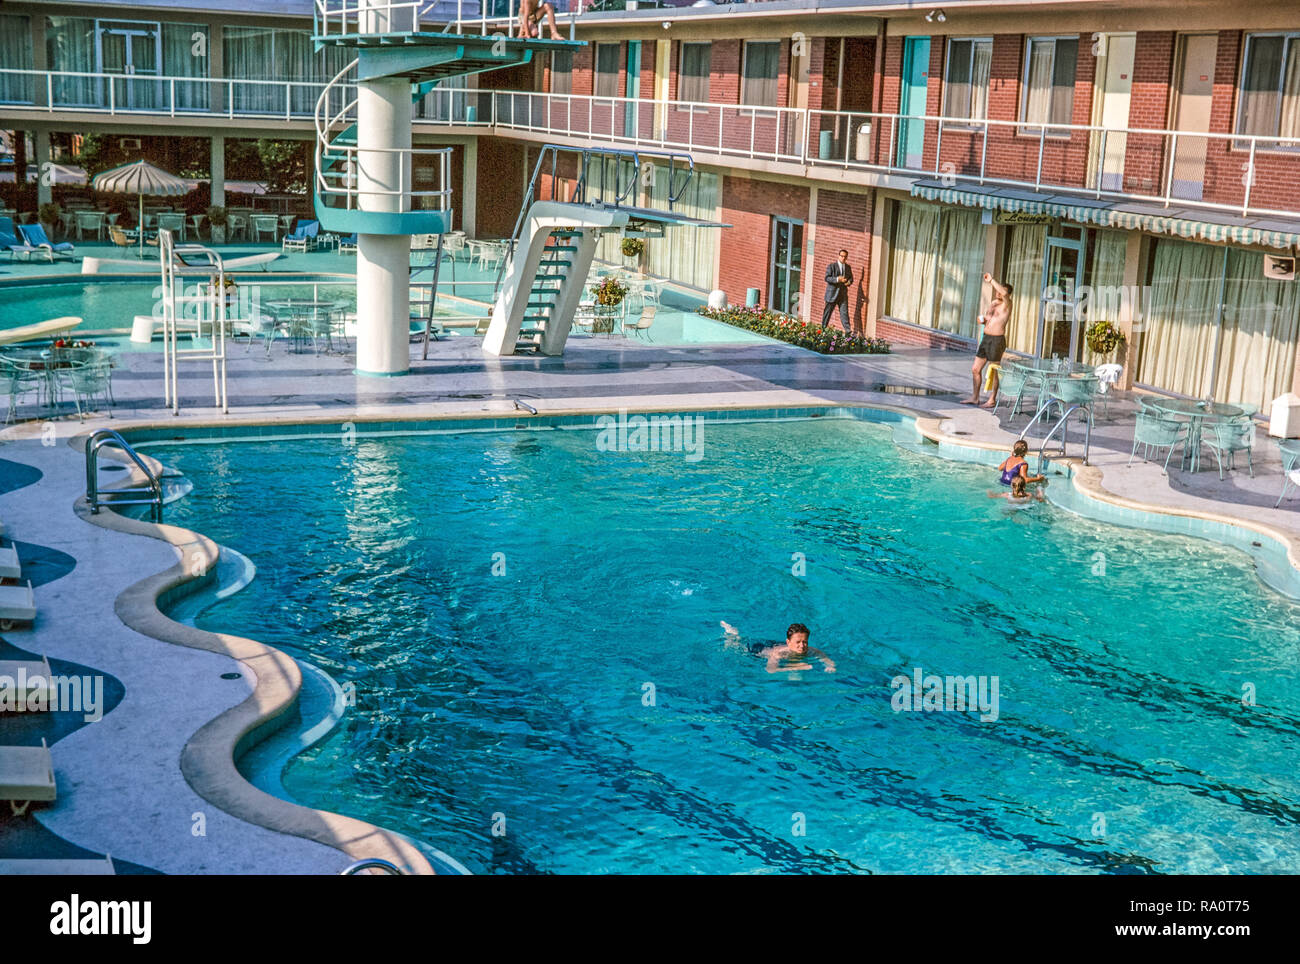 Juli 1964. Ein Außenpool, ein Hotel oder Motel, in New York. Menschen schwimmen und sonnenbaden. Stockfoto